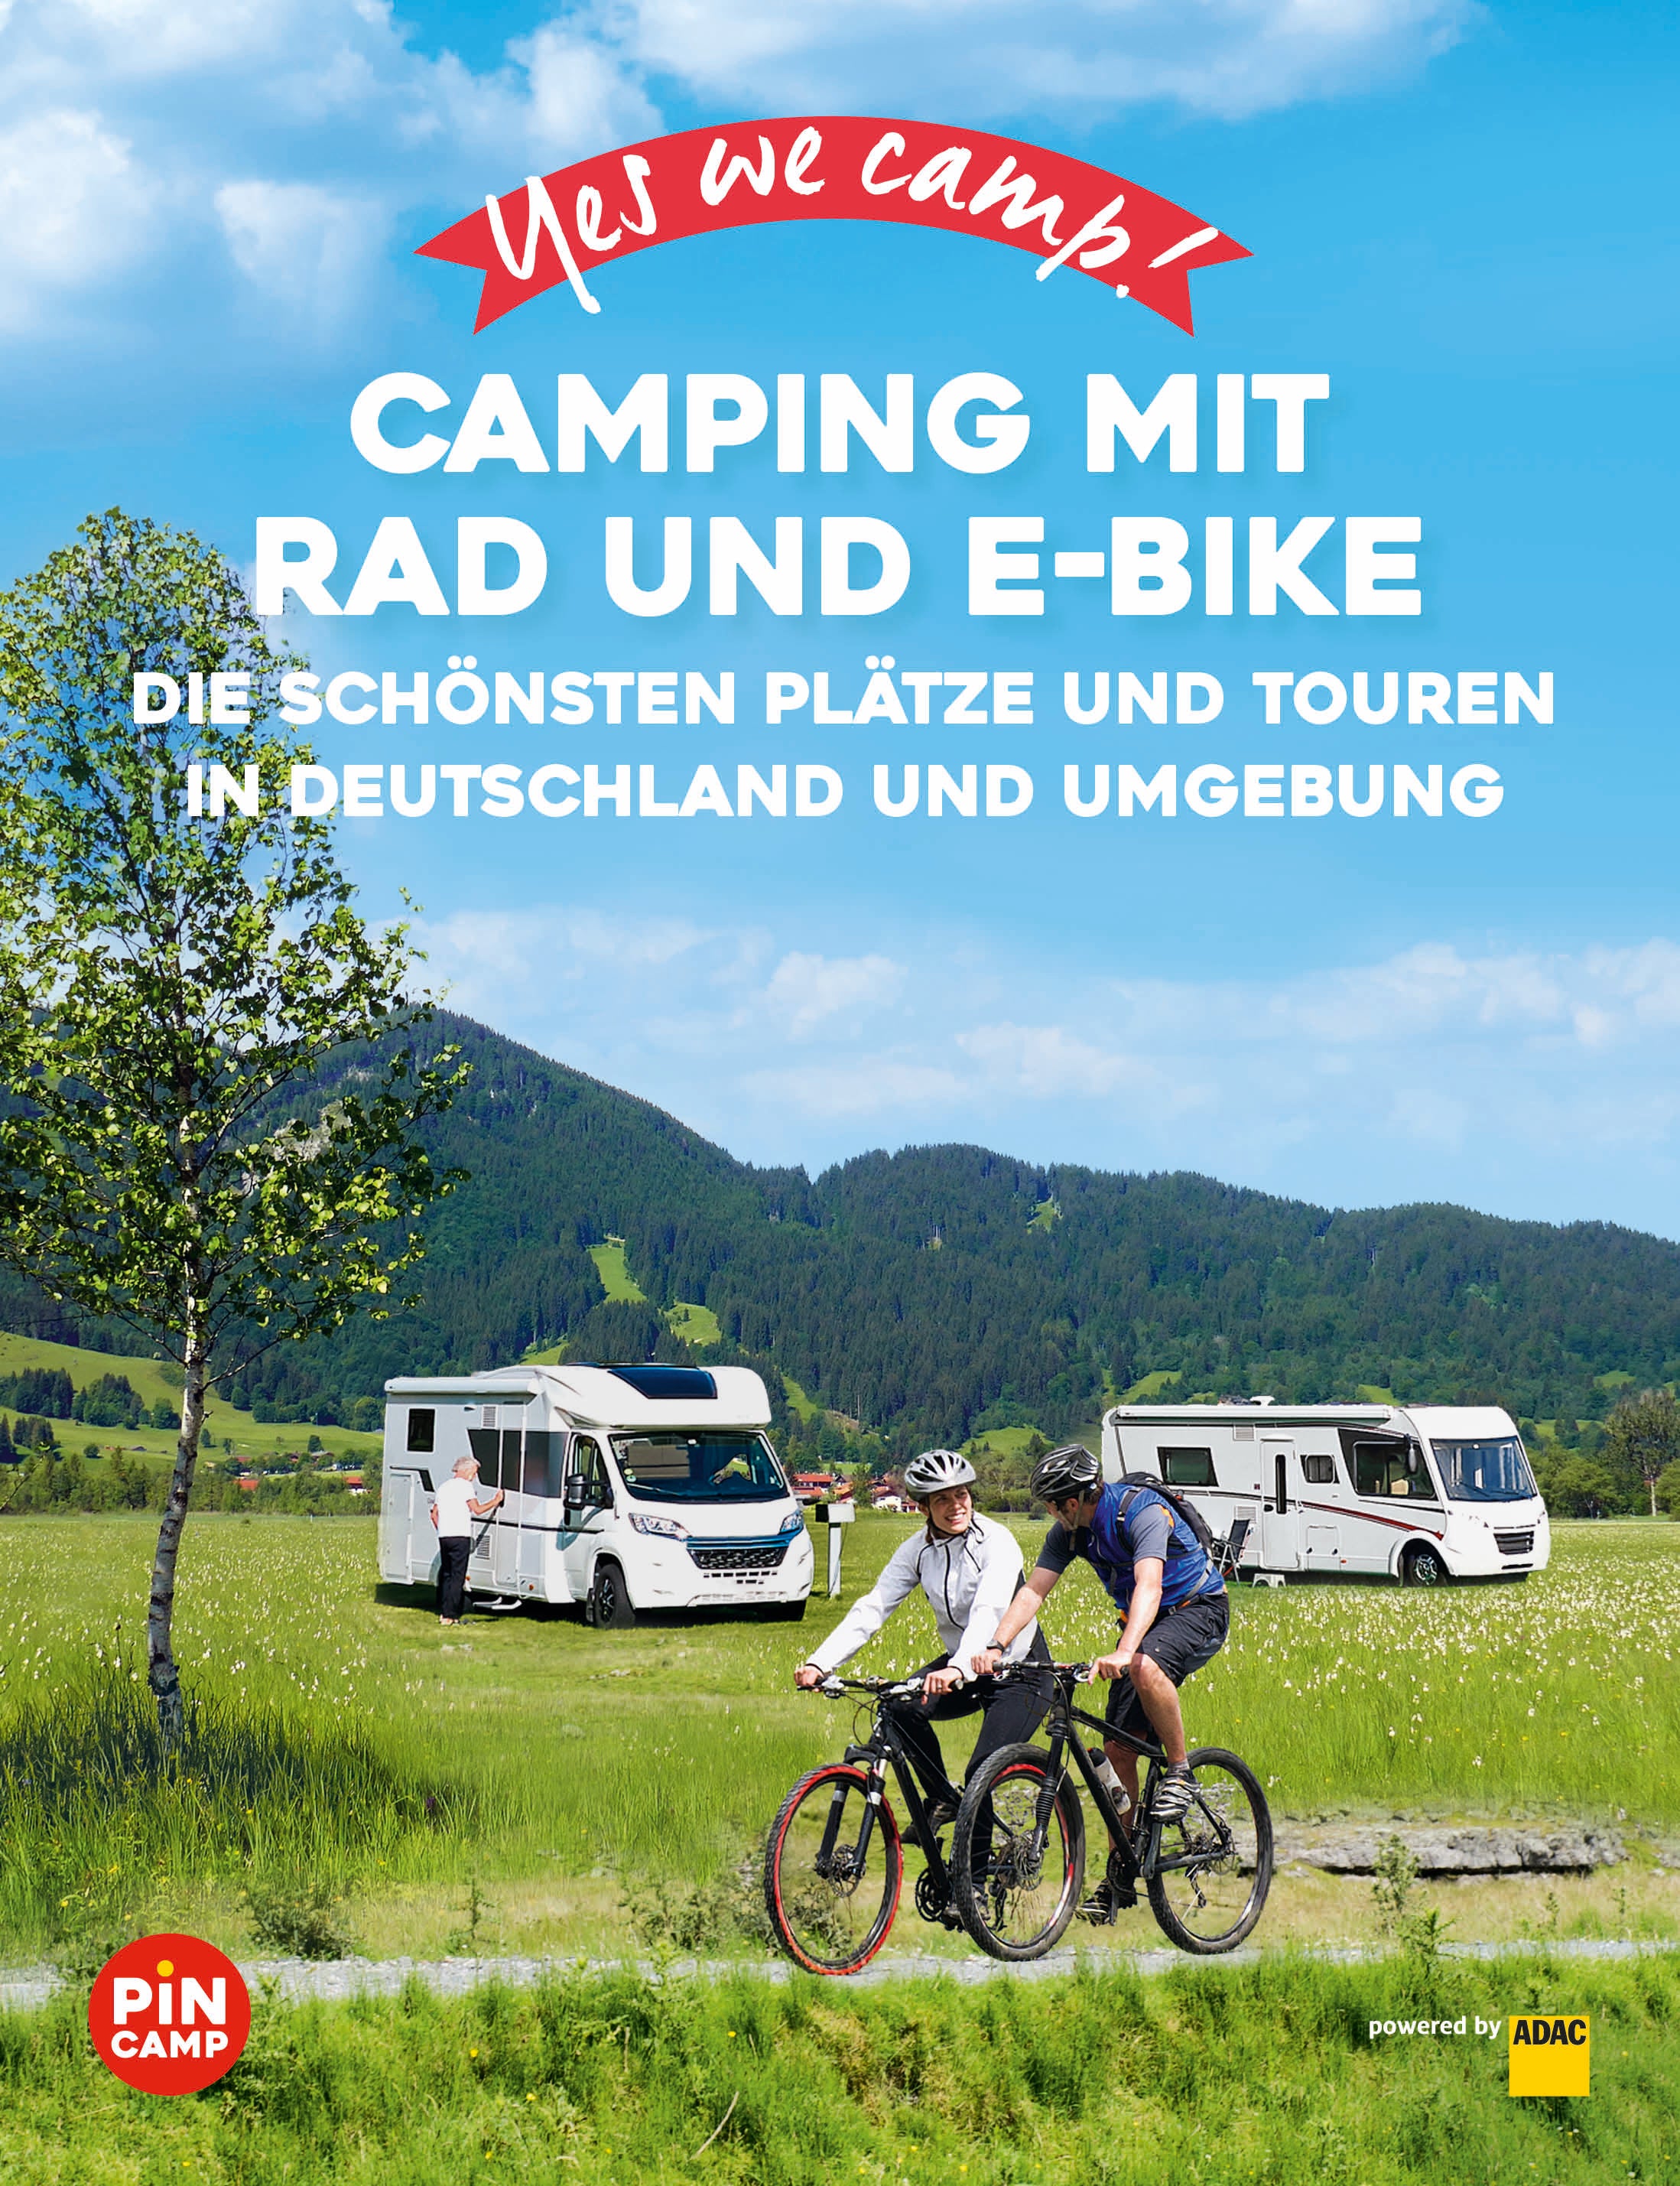 Yes we camp! Camping mit Rad und E-Bike